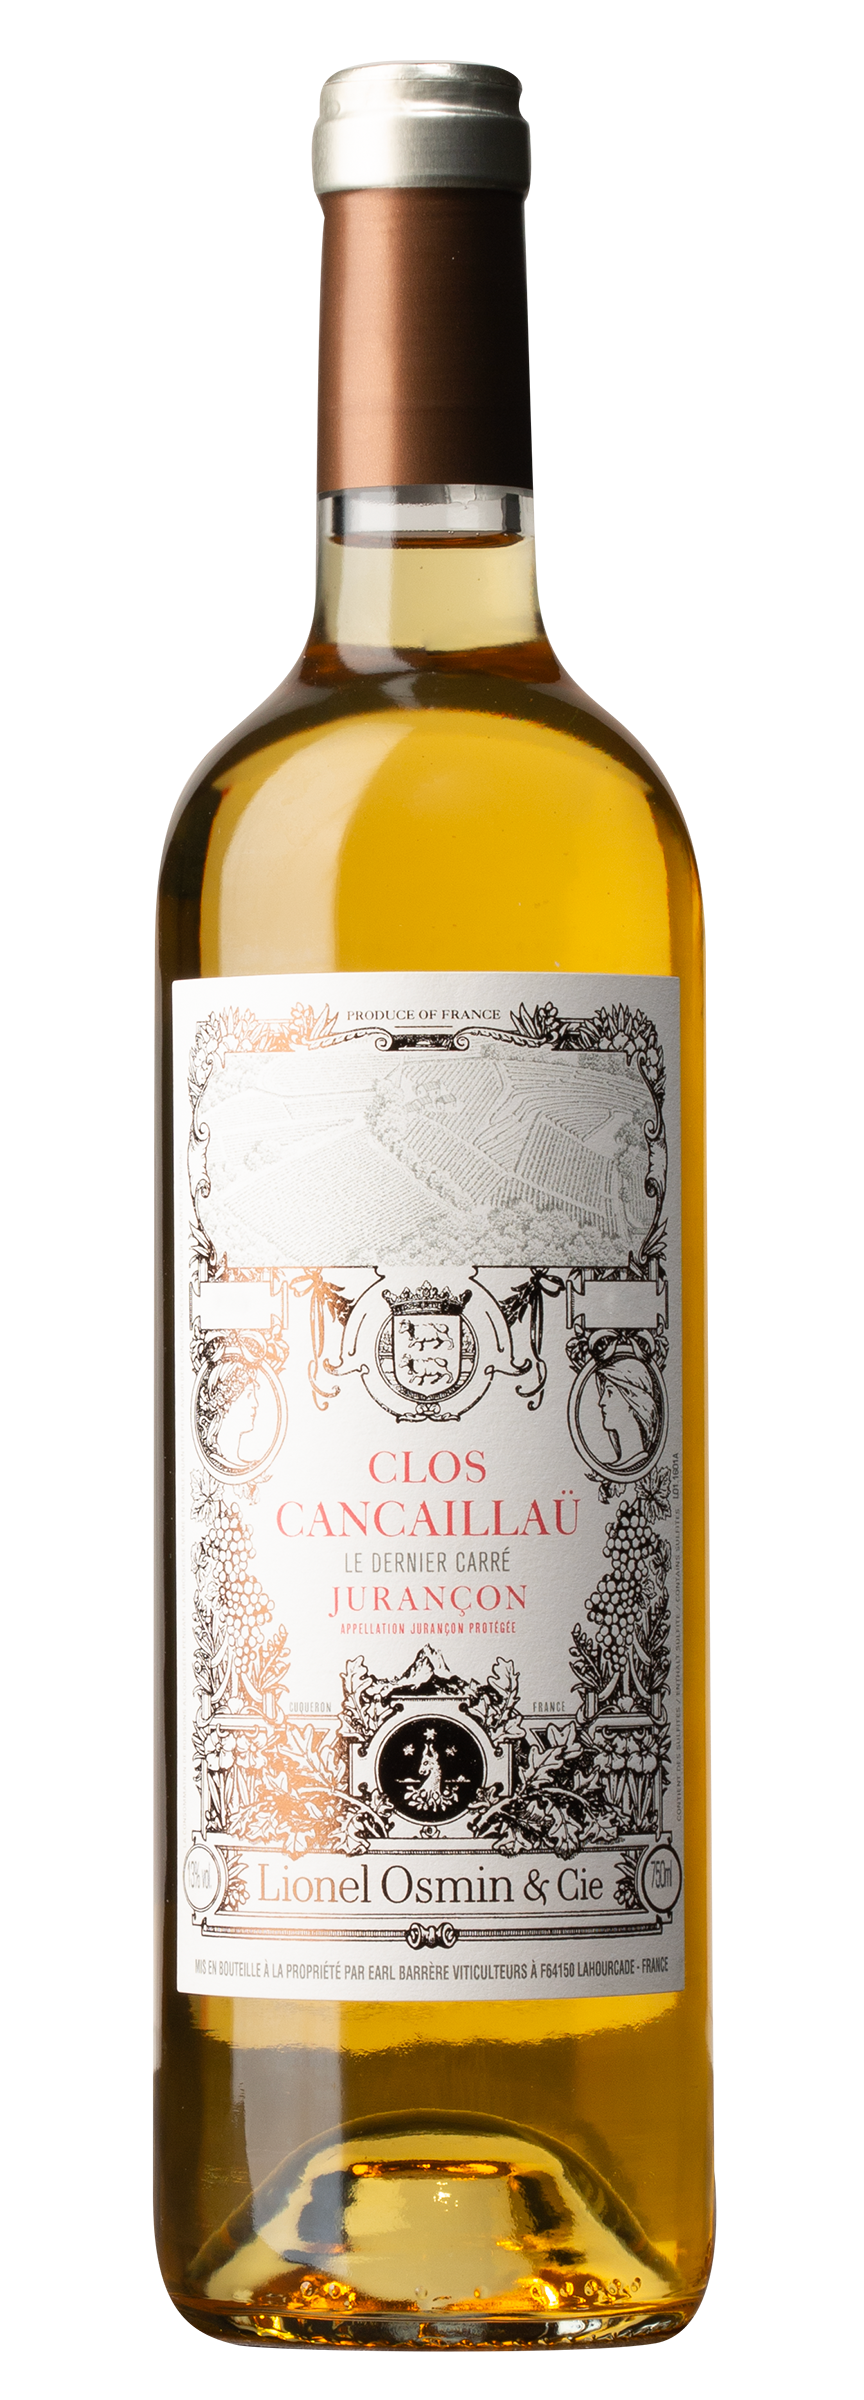 Clos Cancaillaü „Le dernière carée“ AOP Jurançon (moelleux), blanc